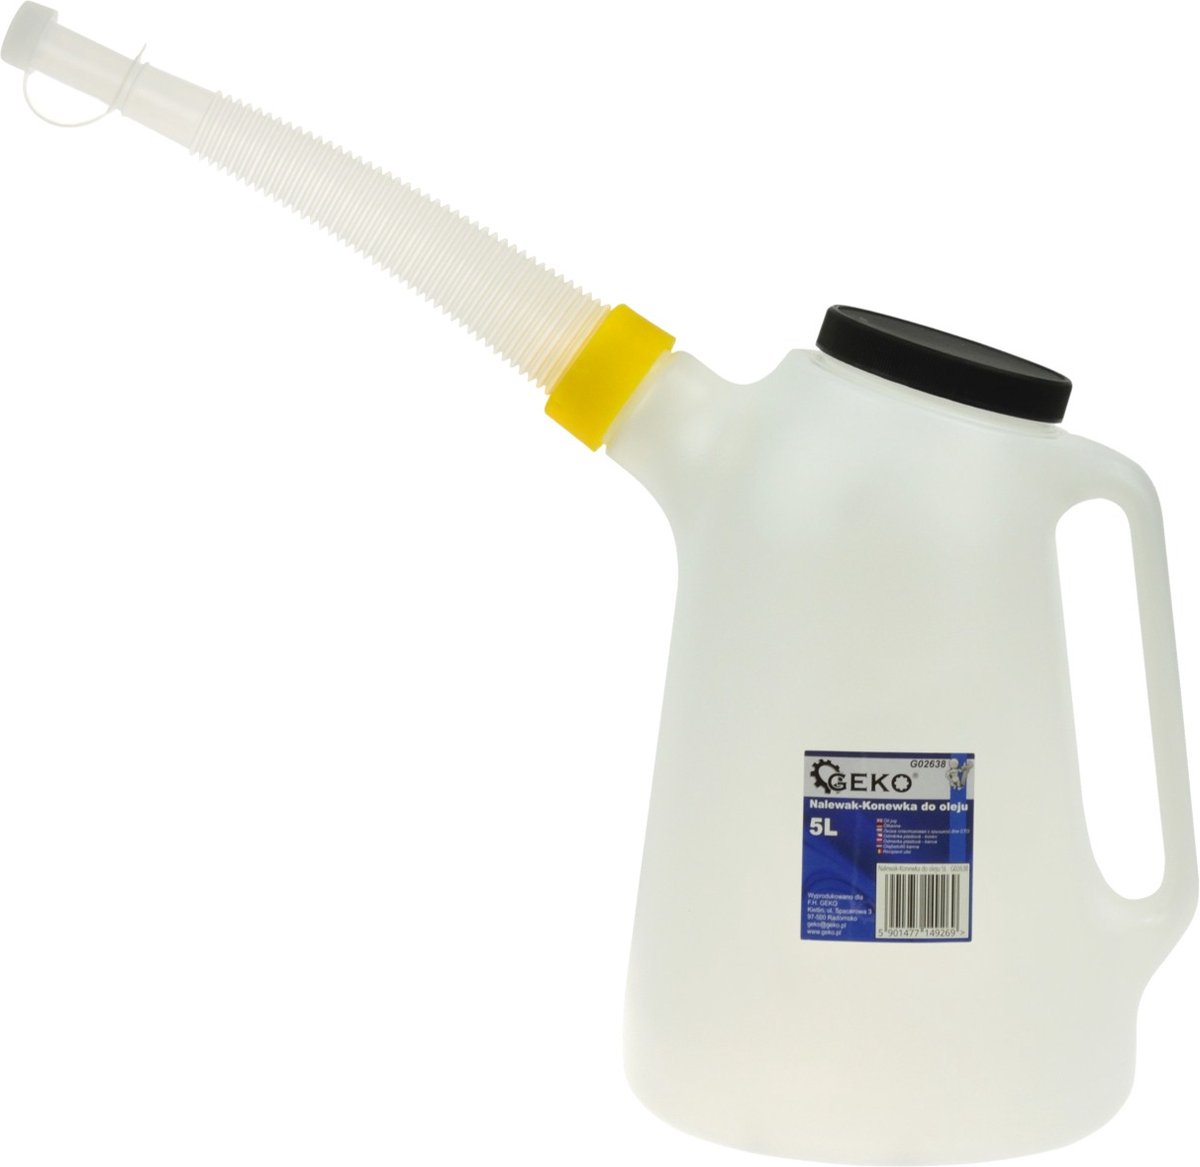 Olie-/ vloeistofkan met schenktuit - 5 Liter inhoud - GEKO